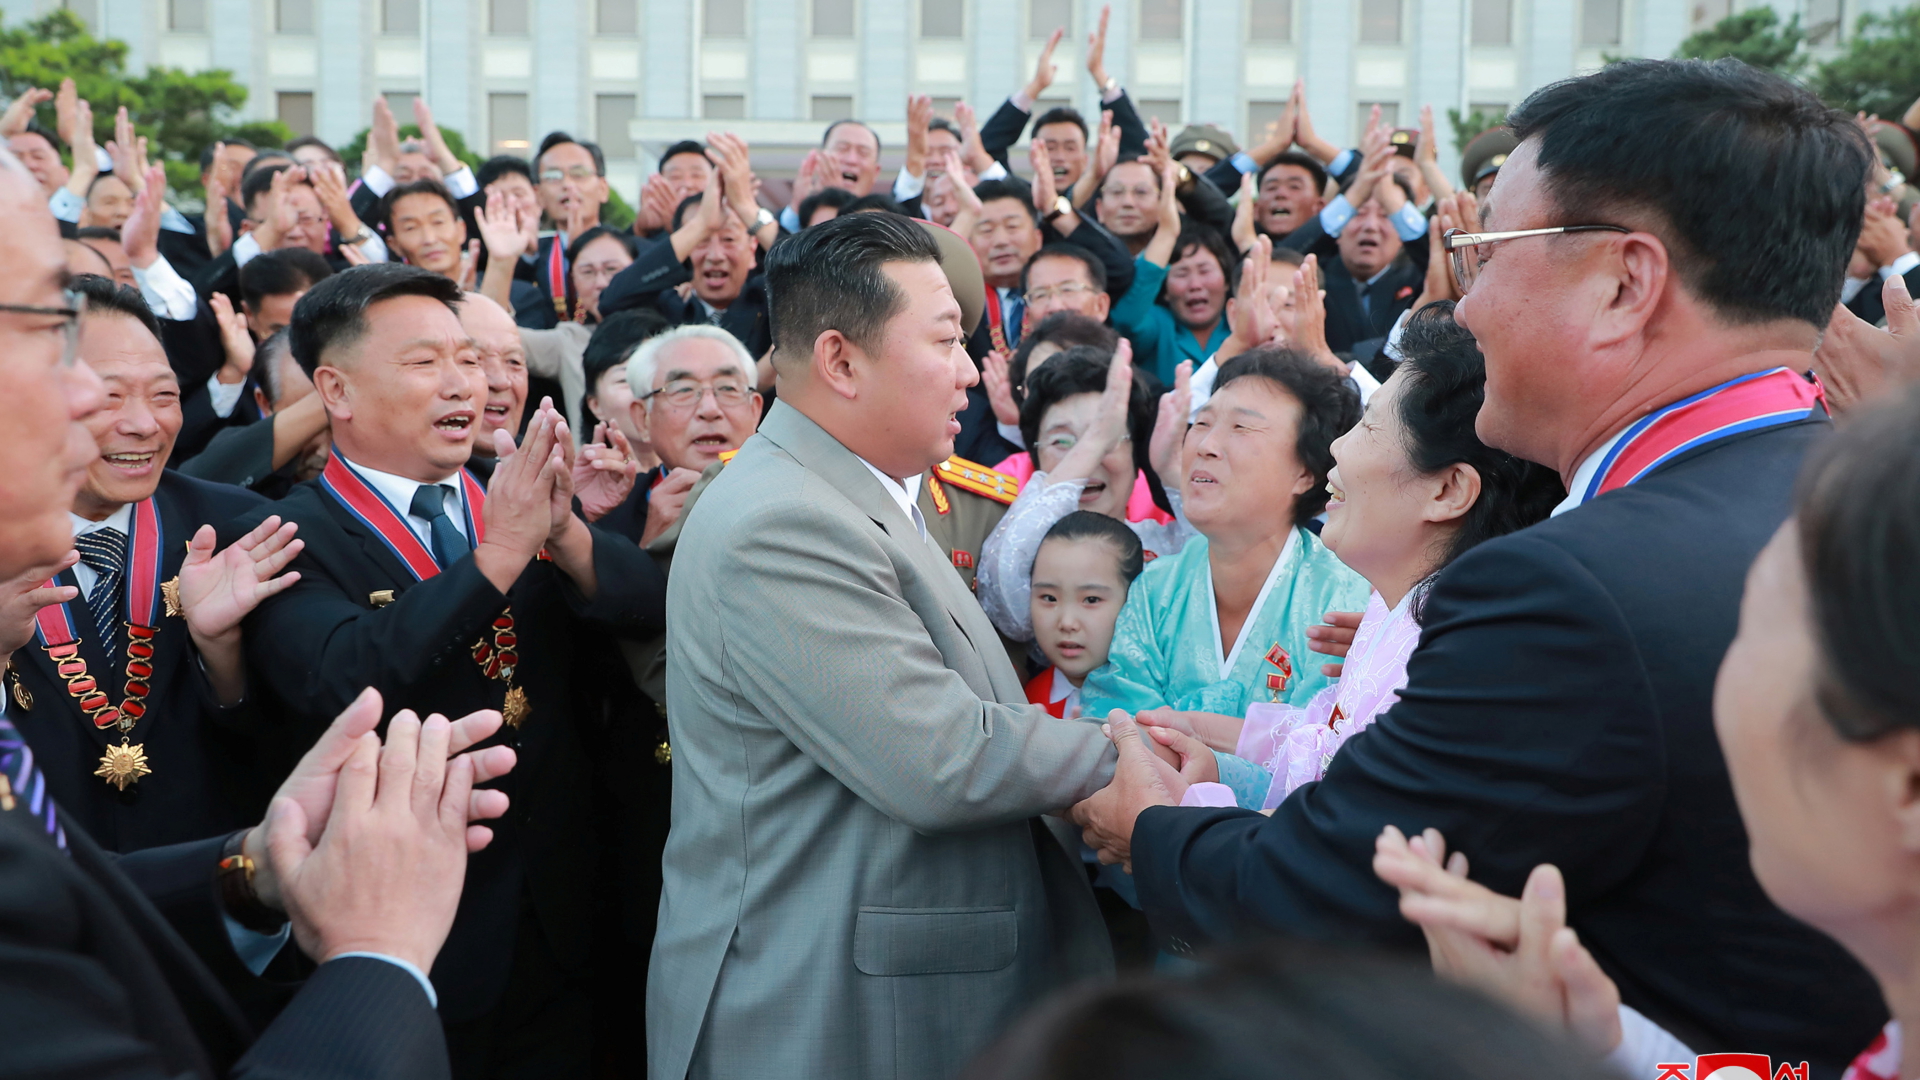 Kim Jong Un lässt sich zum 73. Jahrestag der Gründung Nordkoreas in Pjöngjang von der Bevölkerung feiern. | via REUTERS